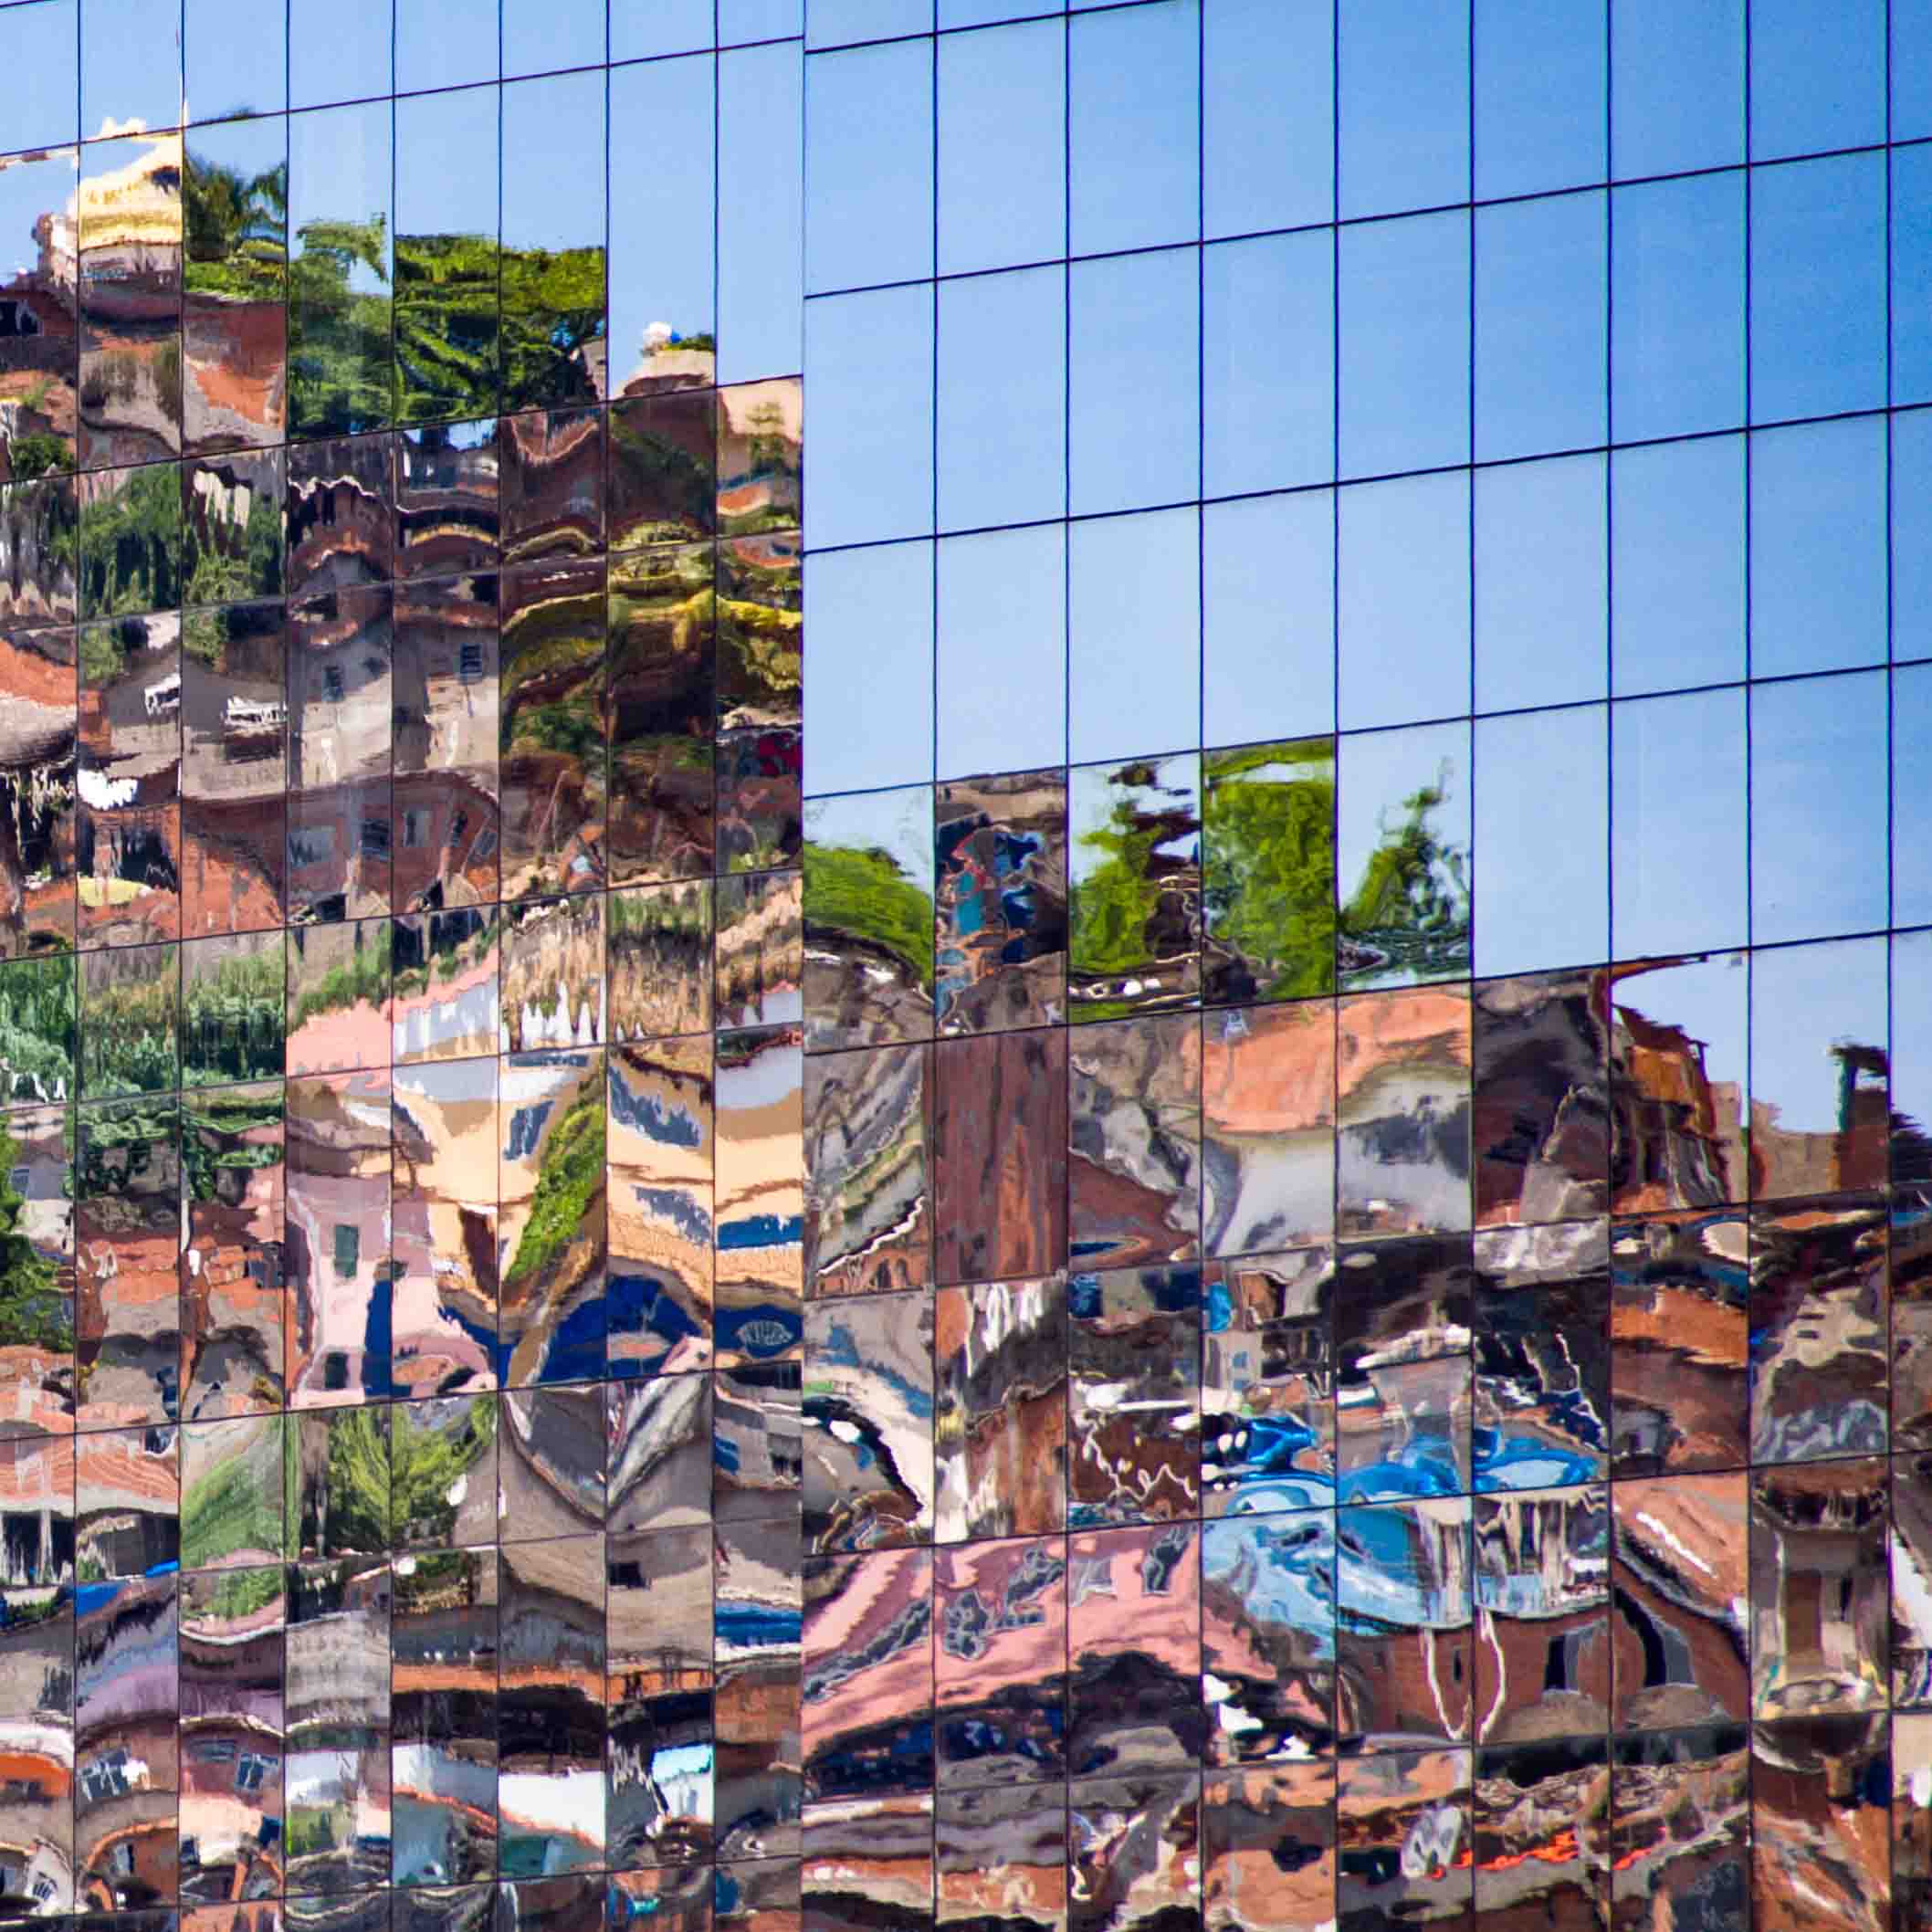 brazil-favela-reflexion-inequality-stk-200x200